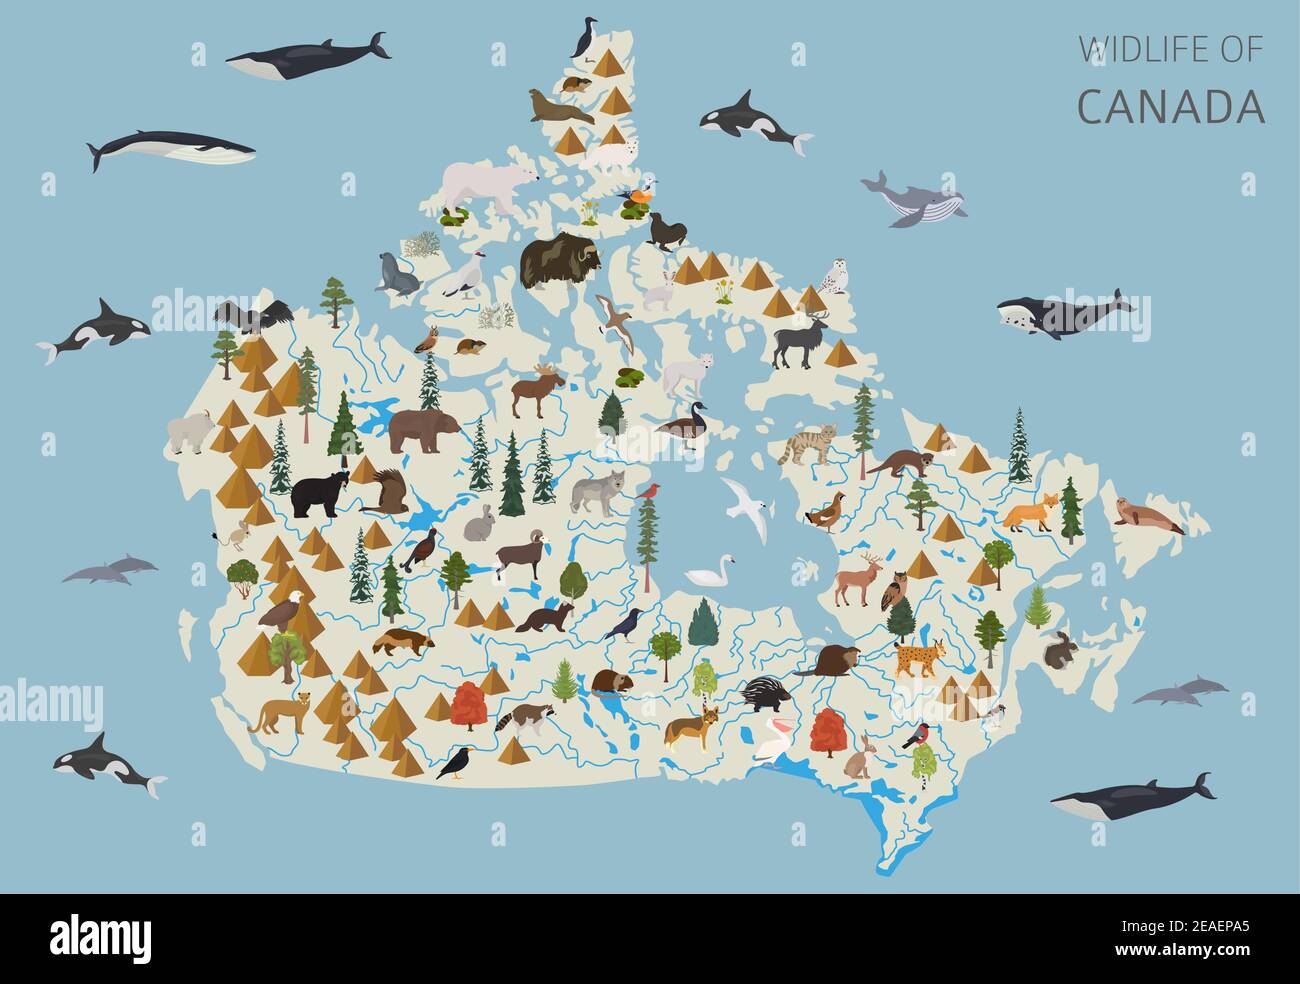 Flaches Design der kanadischen Tierwelt. Tiere, Vögel und Pflanzen Konstruktor Elemente isoliert auf weißem Set. Erstellen Sie Ihre eigene Geographie Infografiken Sammlung Stock Vektor